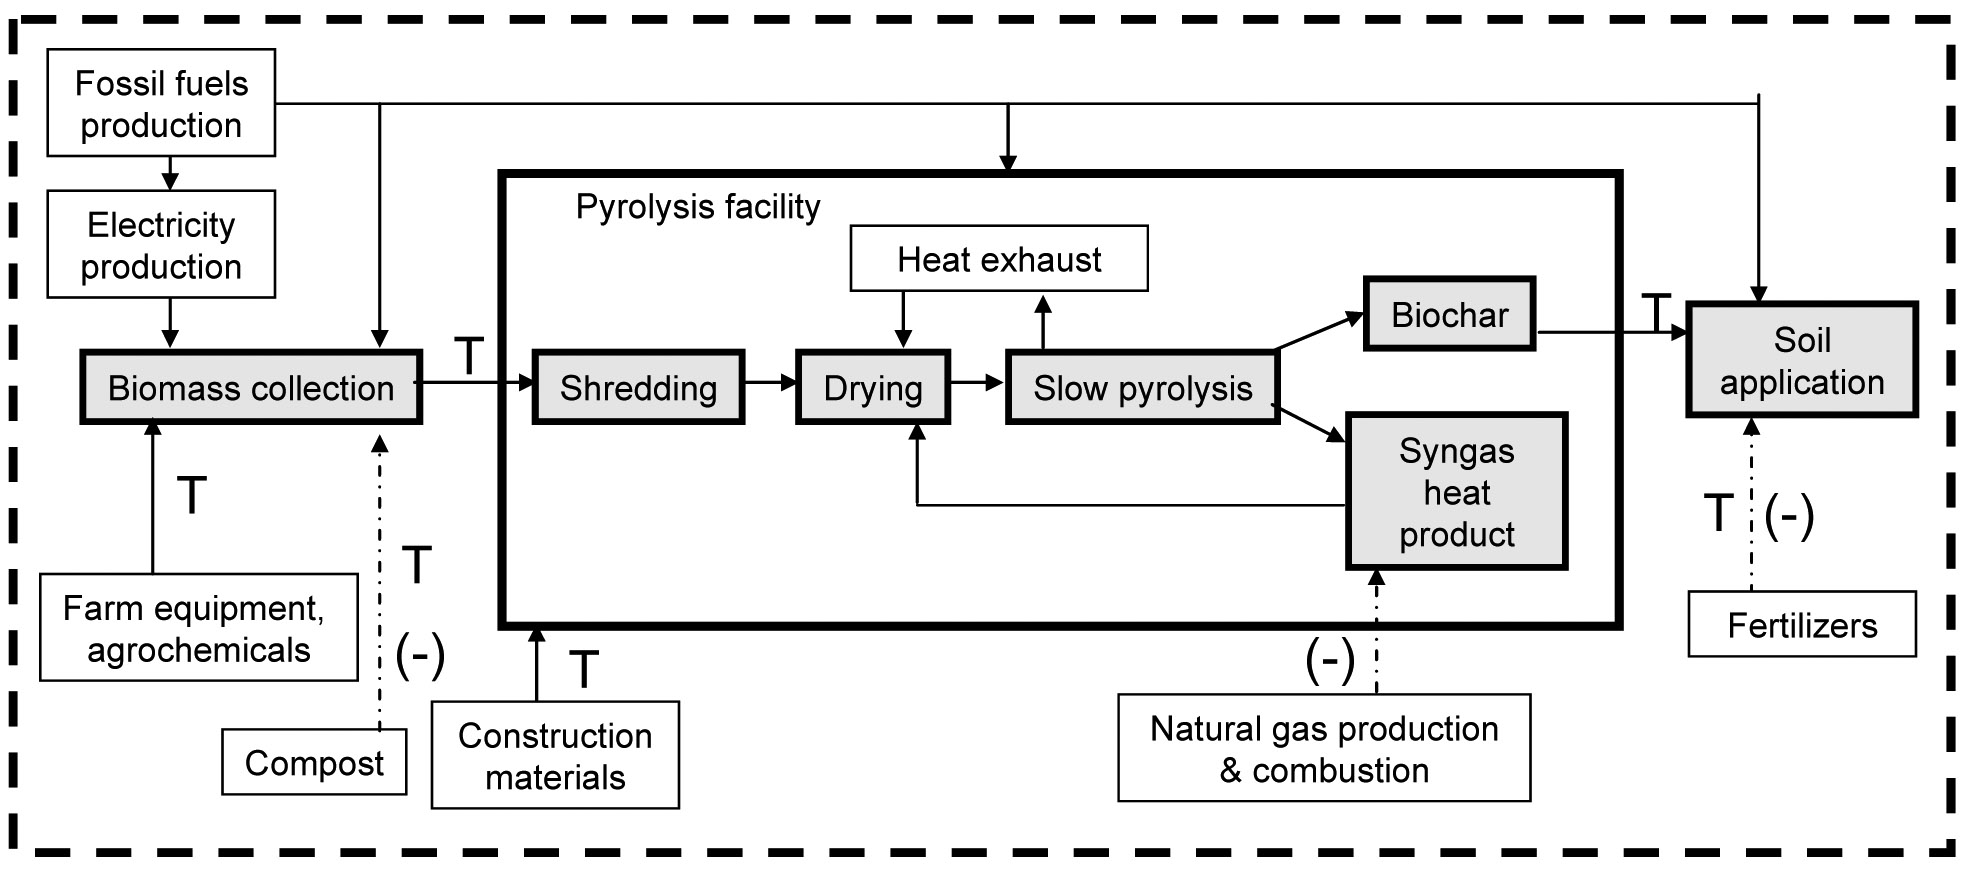 La figura 2 muestra el análisis del ciclo de vida del biocarbón